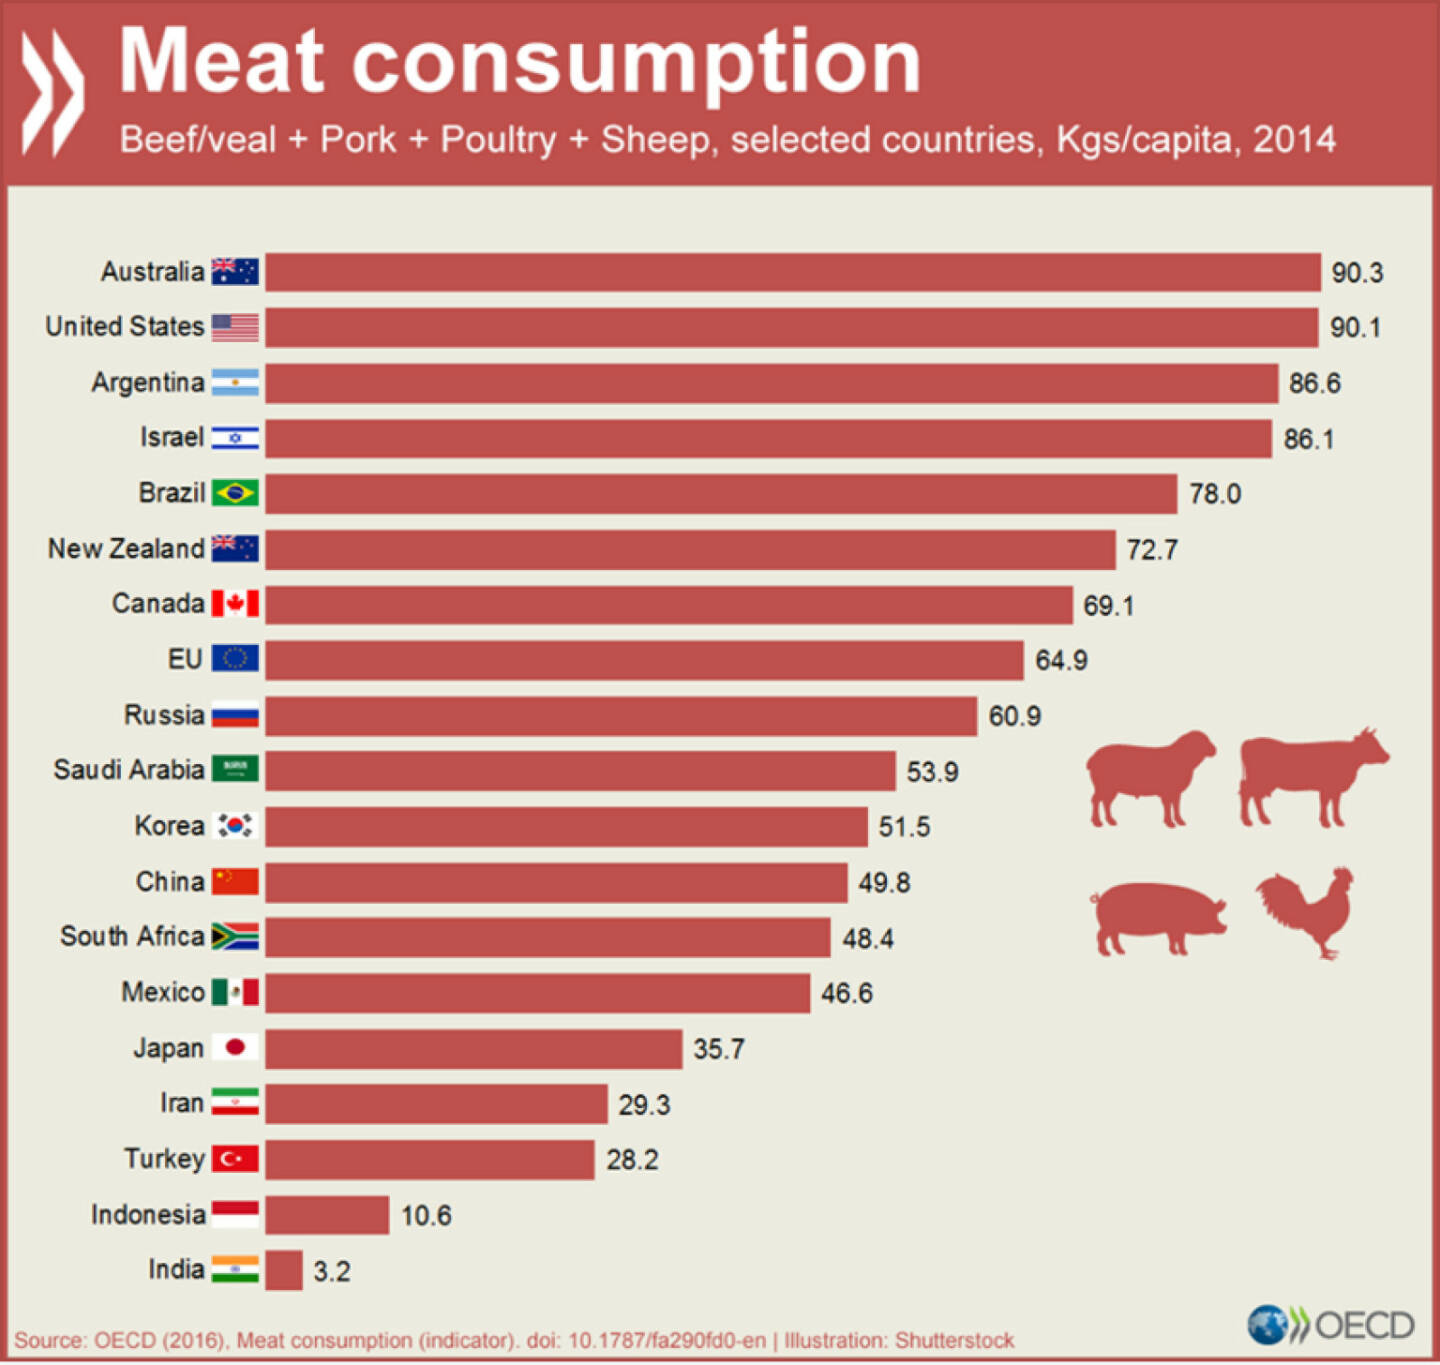  Fleischkonsum in ausgewählten Ländern. Mehr Details unter http://data.oecd.org/agroutput/meat-consumption.htm